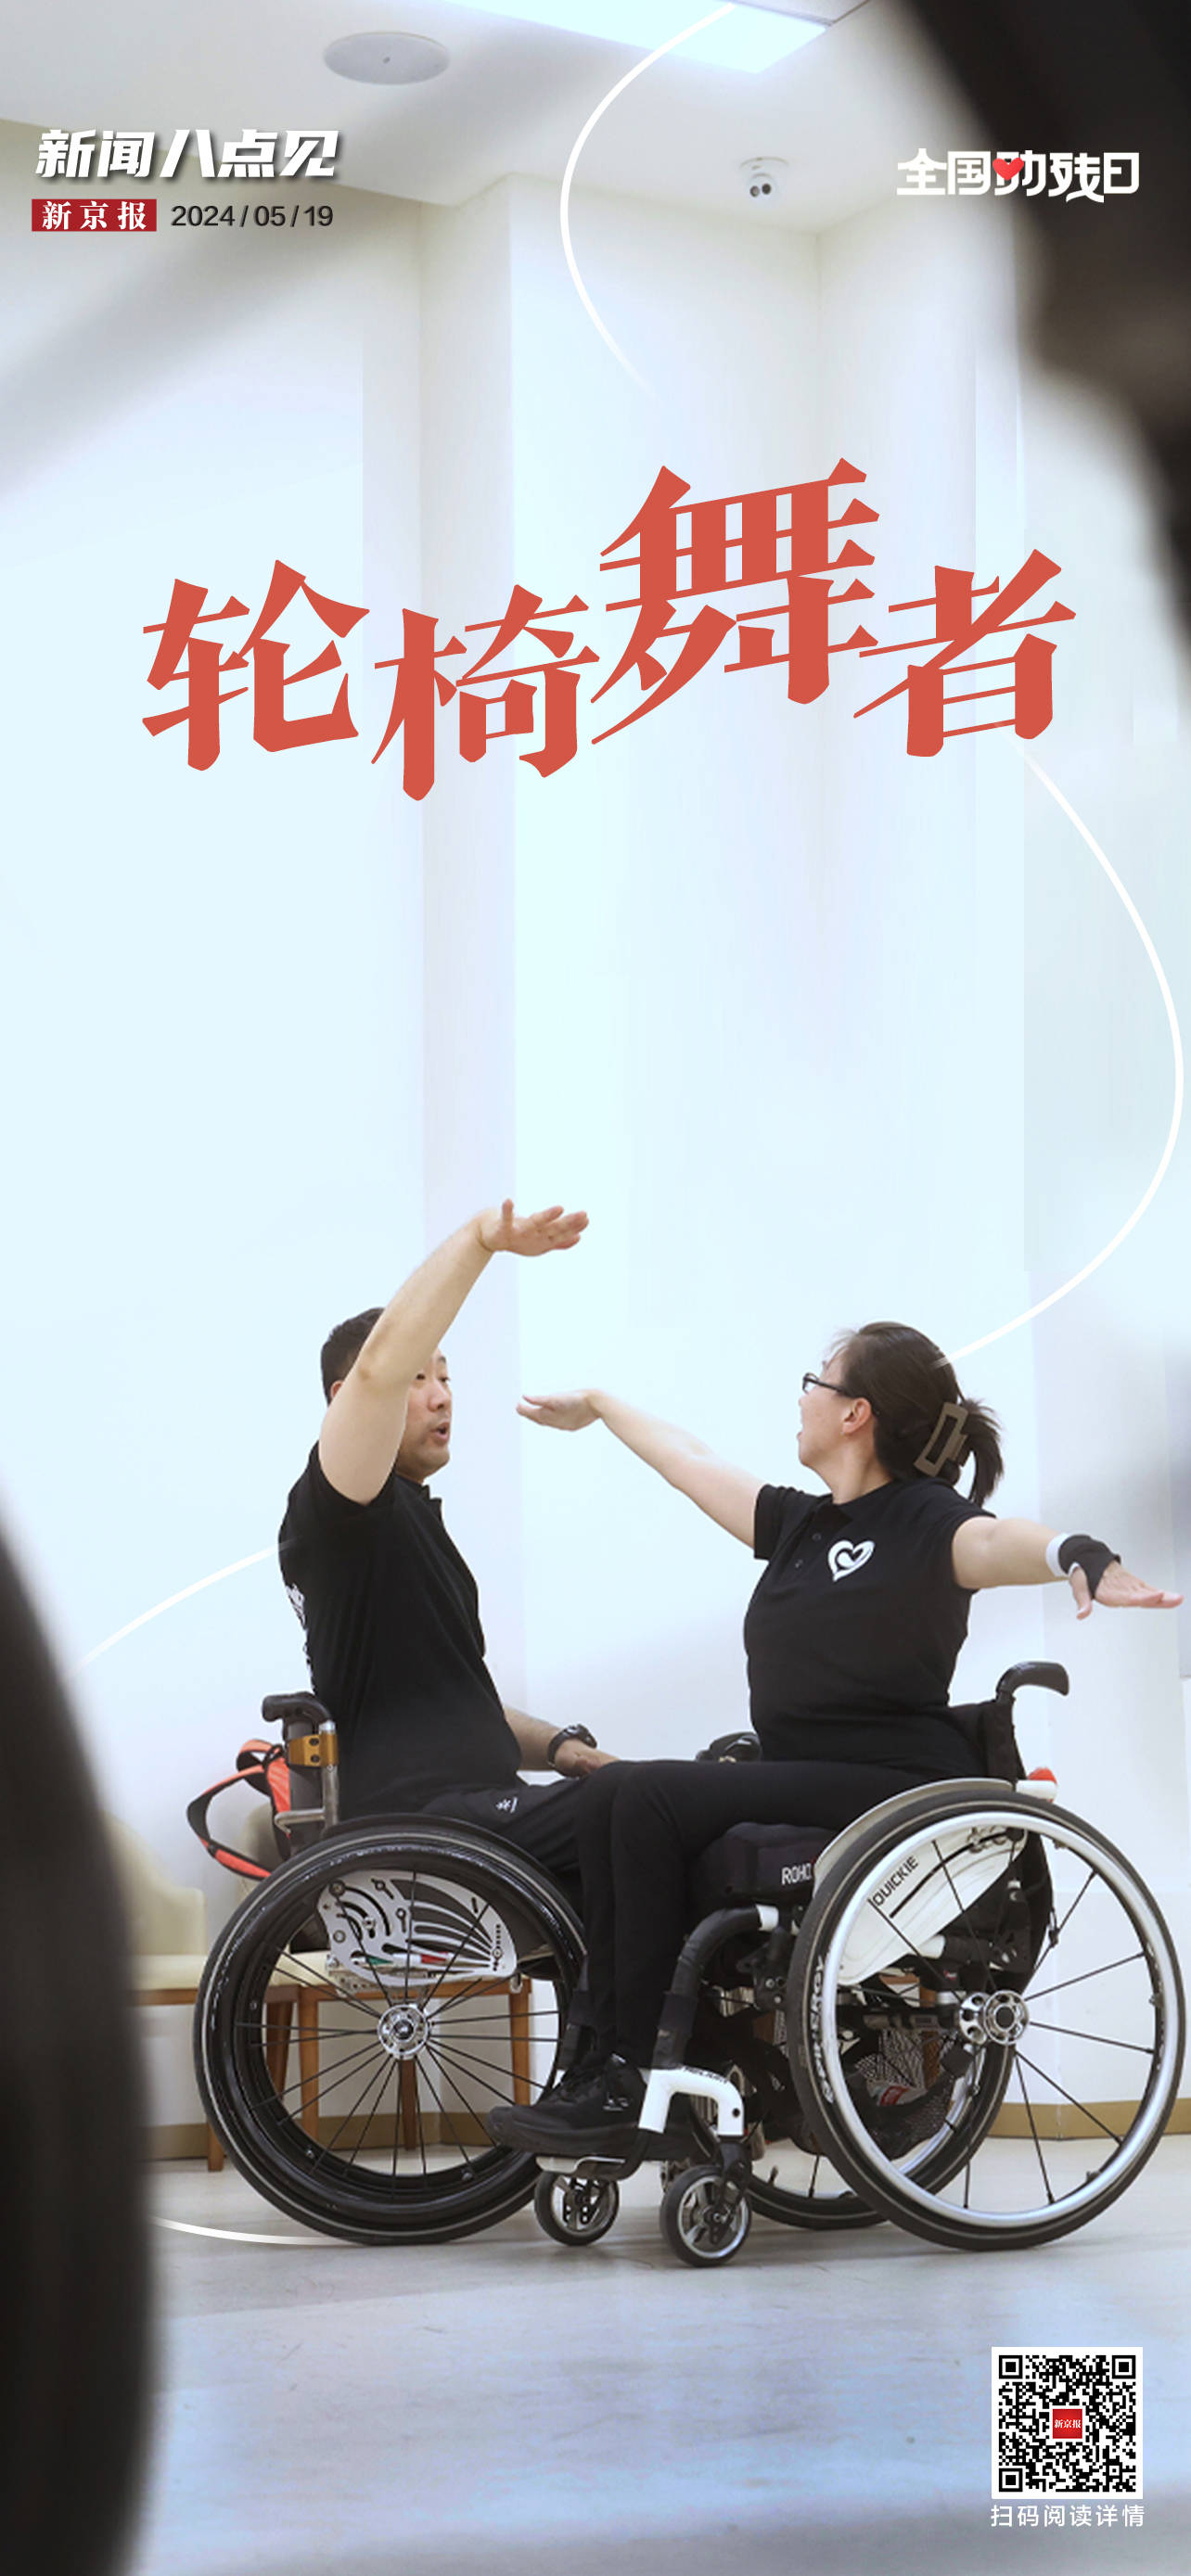 李辉曾是一名专业舞蹈演员,2012年他因意外导致高位截瘫,但他选择继续